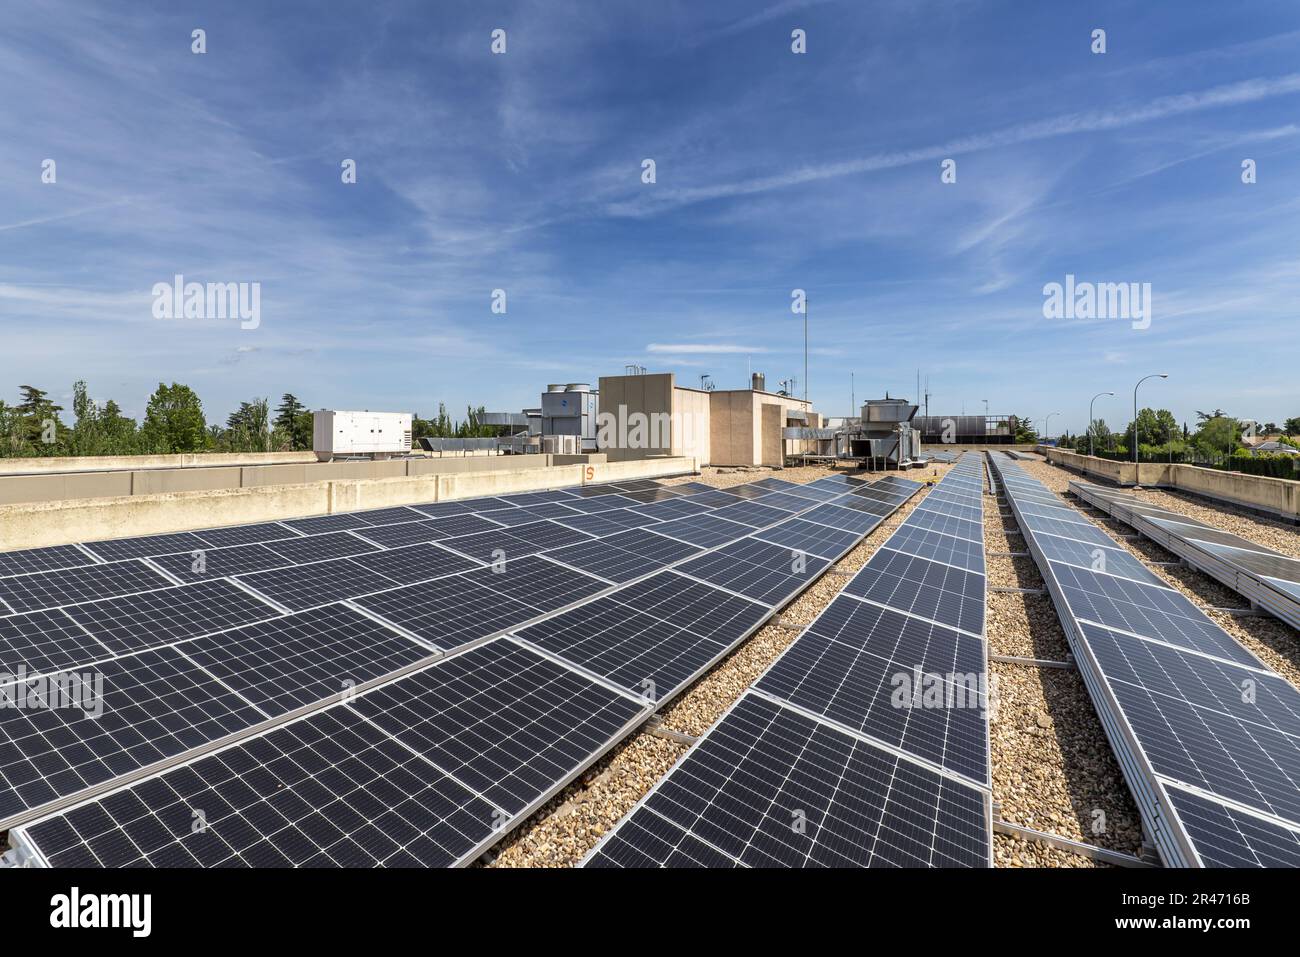 Alignement des panneaux solaires récemment installés sur le toit d'un immeuble de bureaux avec le sol recouvert de gravier Banque D'Images